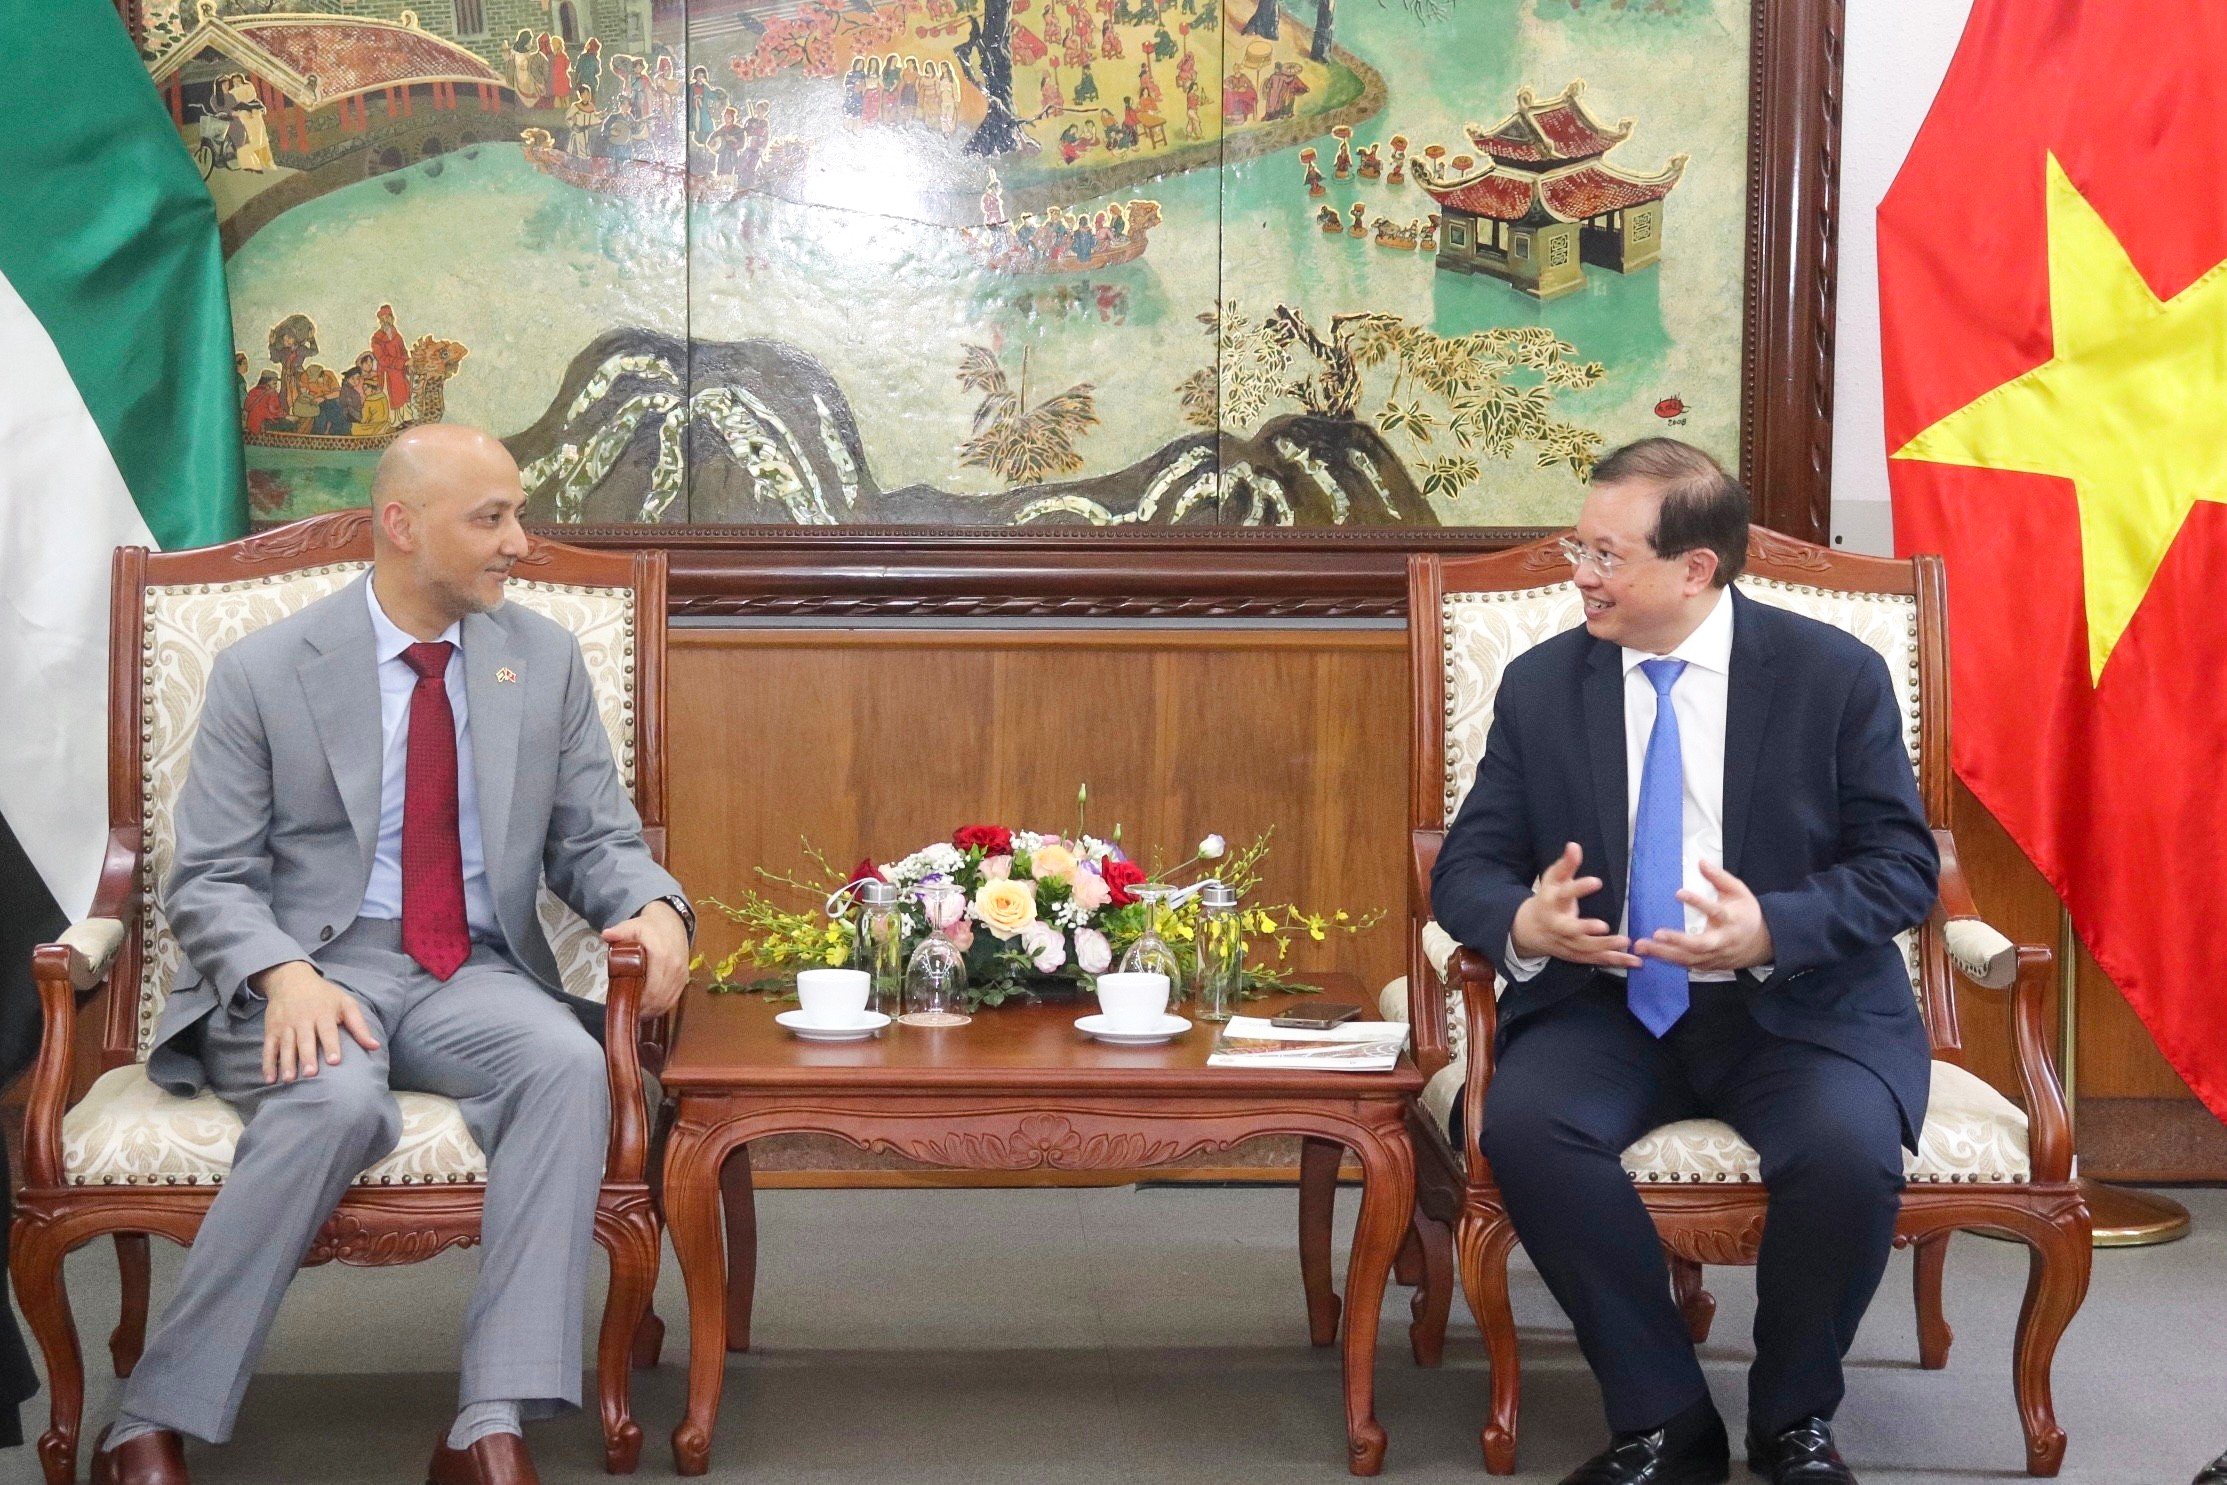 Thứ trưởng Tạ Quang Đông đã có buổi tiếp xã giao tân Đại sứ Các Tiểu Vương quốc Ả-rập thống nhất (UAE), ông Bader Abdulla Almatrooshi (Ảnh: icd.gov.vn).